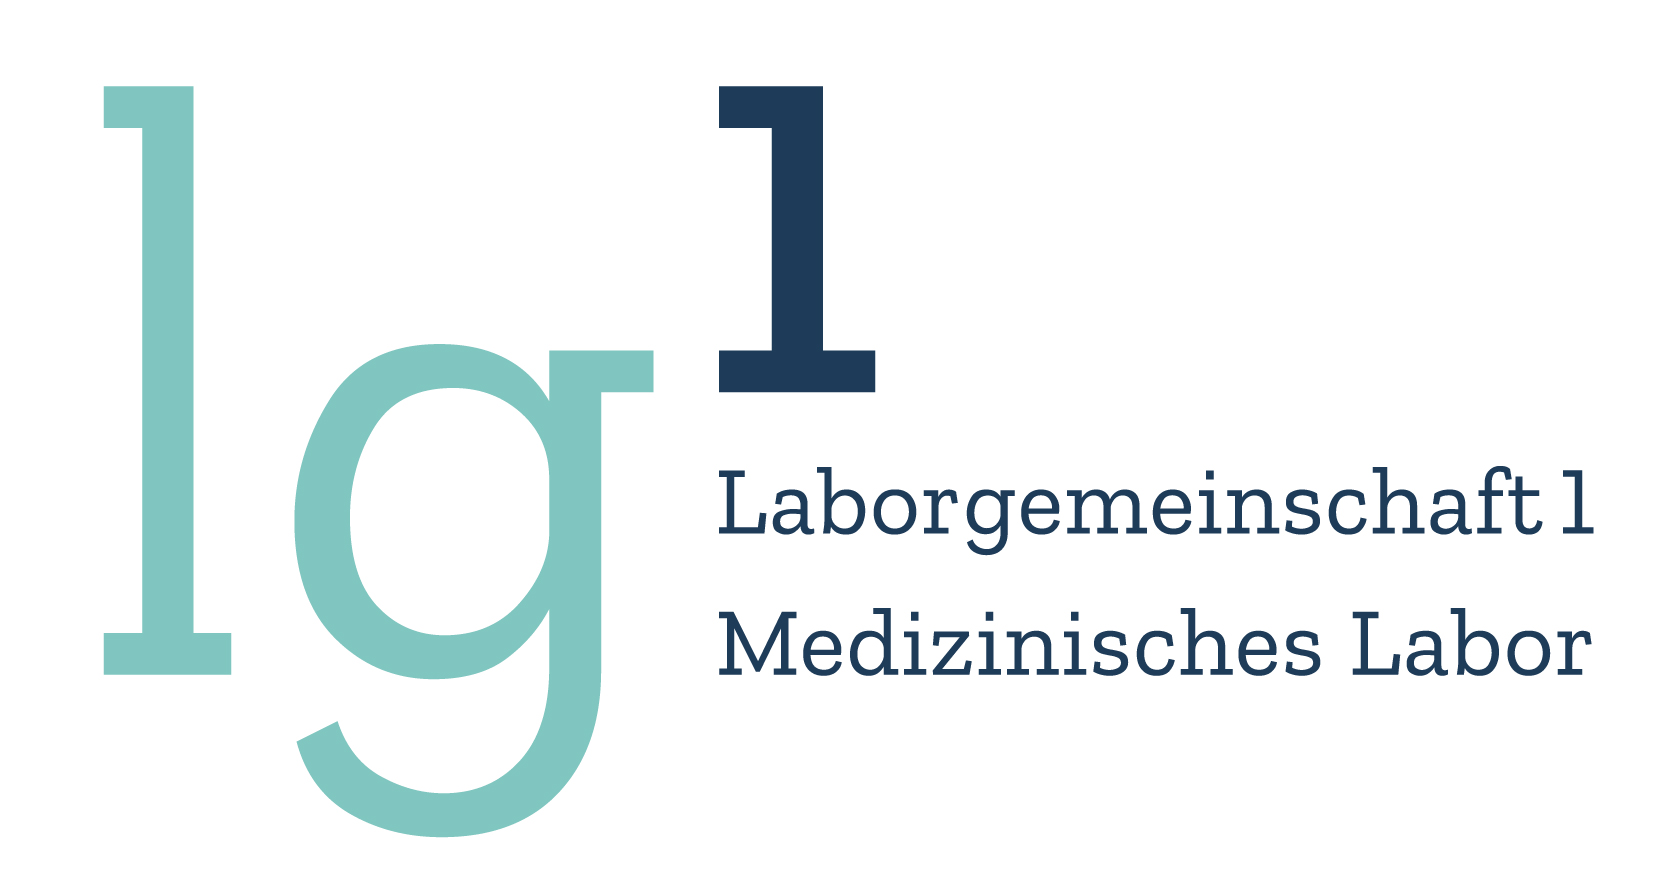 Laborgemeinschaft LG 1, Zürich